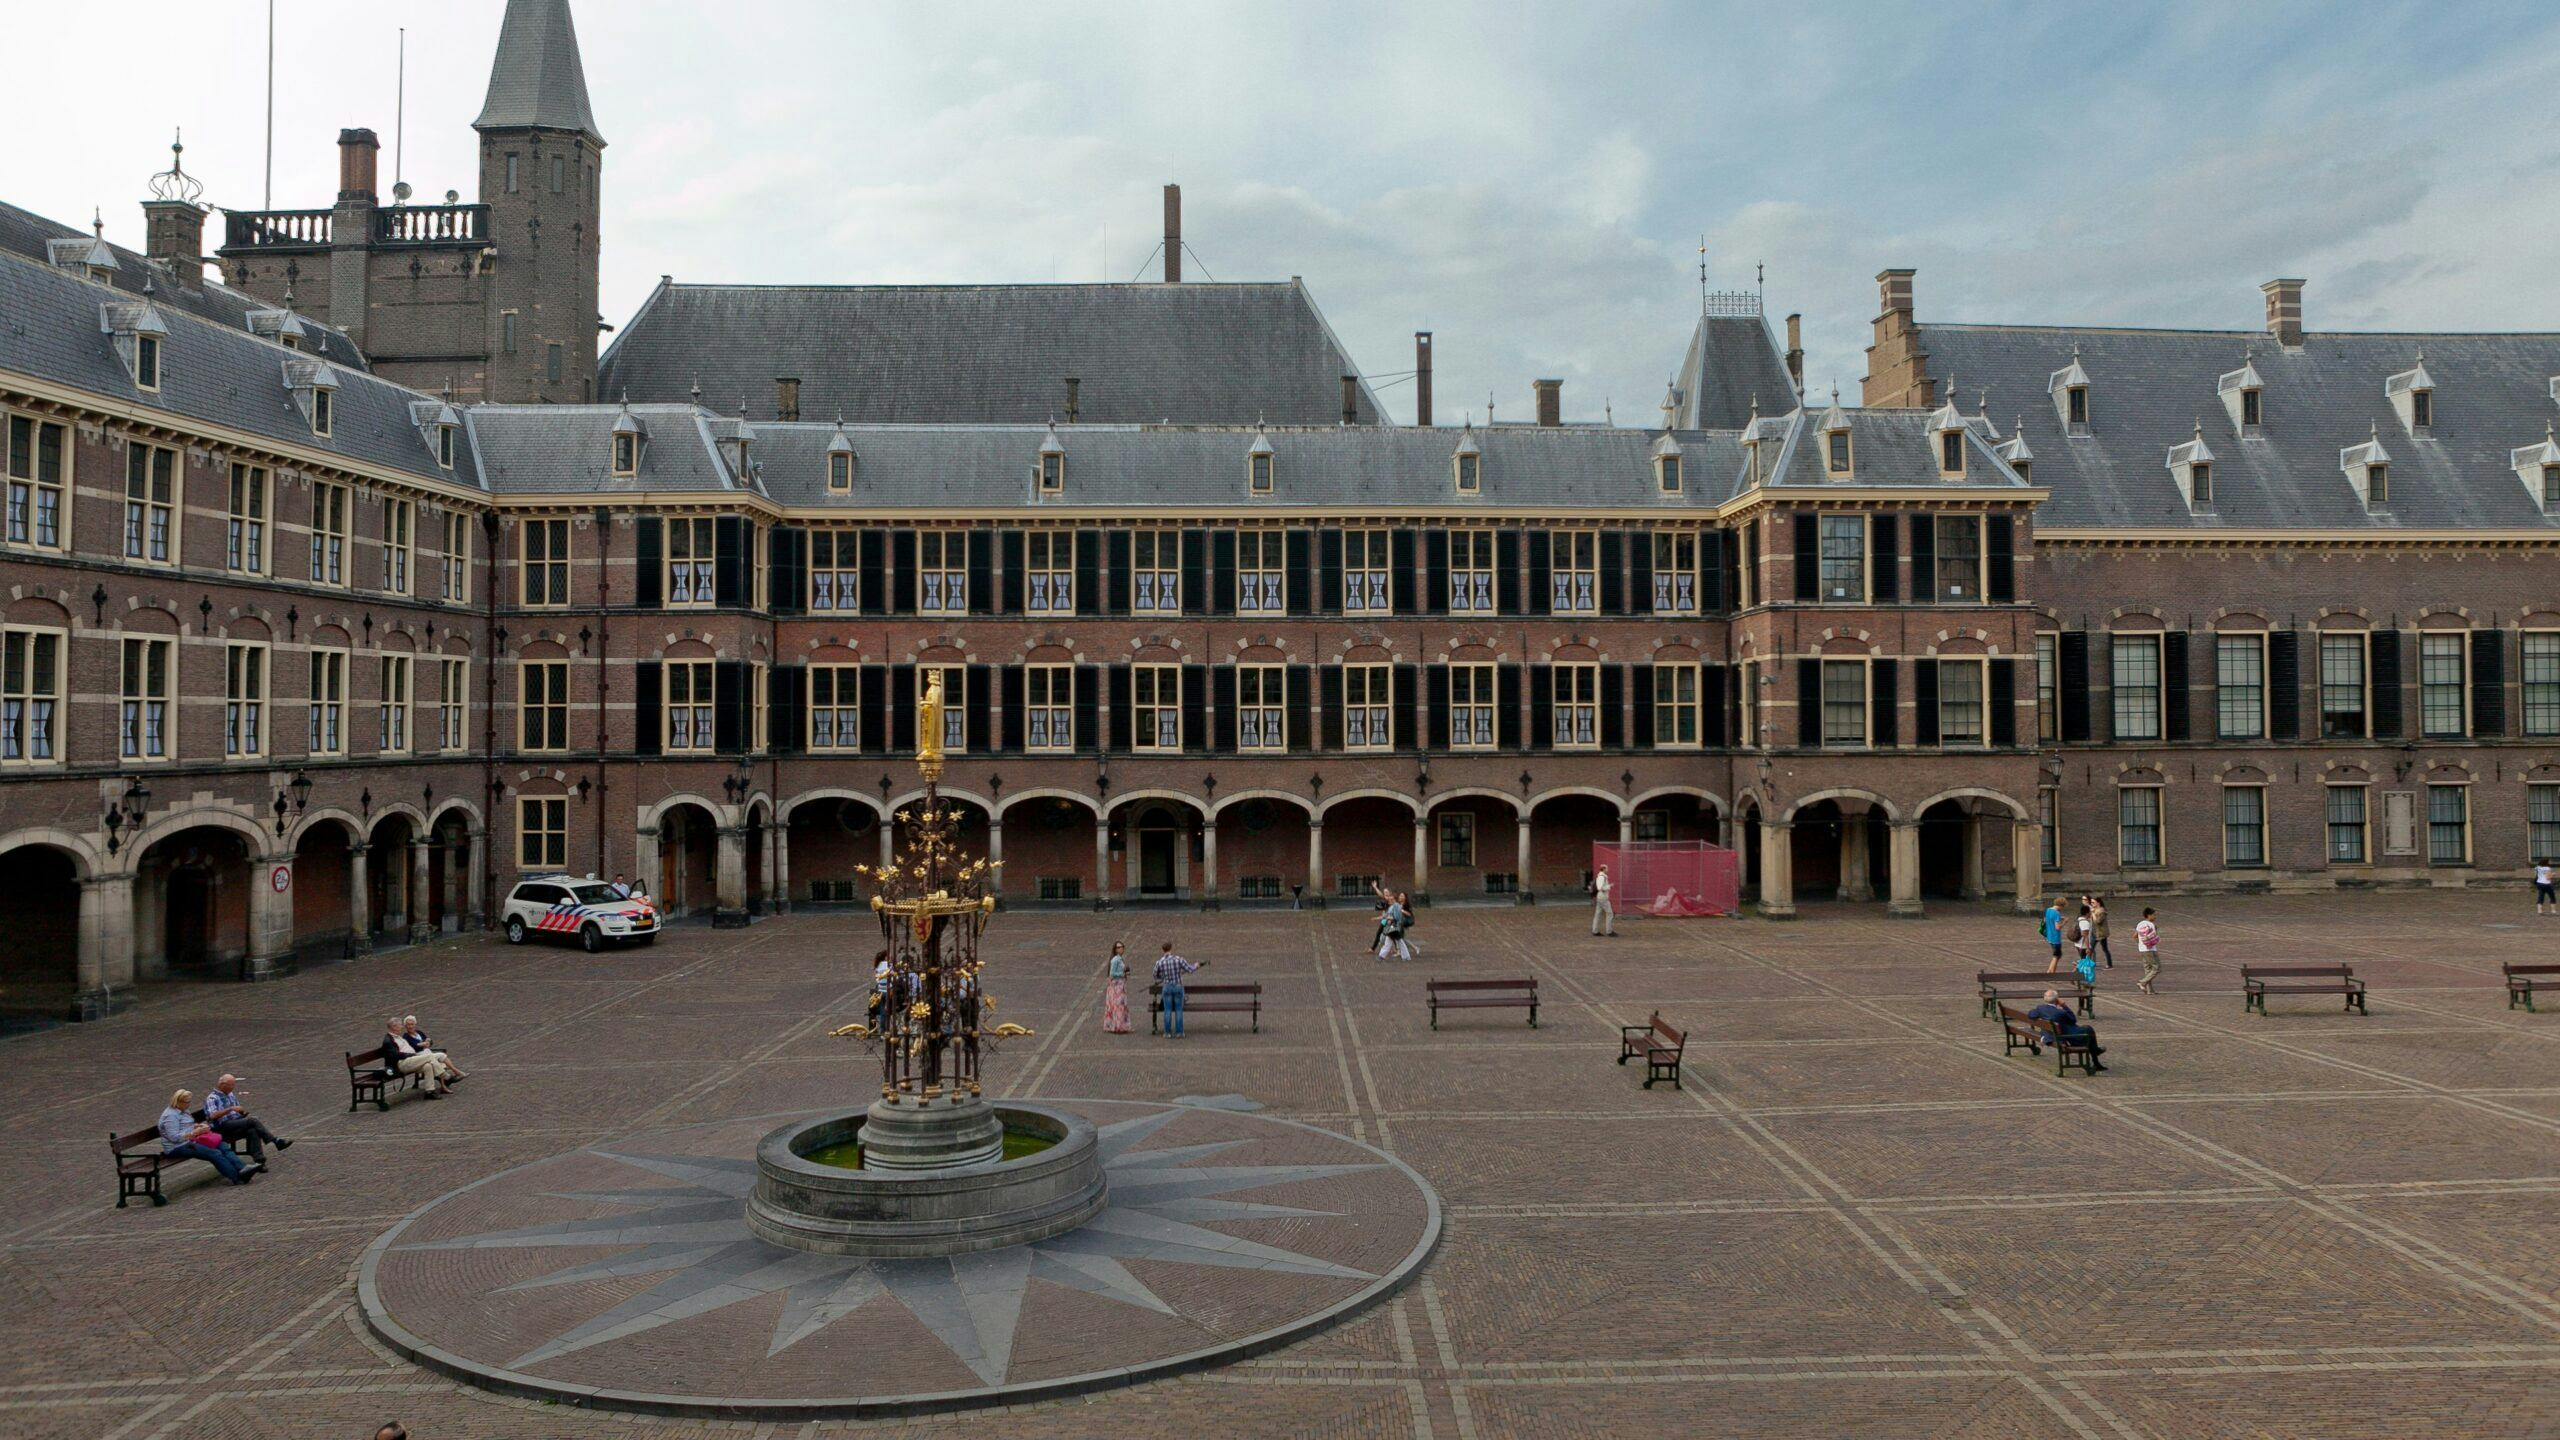 Renovatie Binnenhof mag doorgaan van provincie, milieuorganisatie niet blij